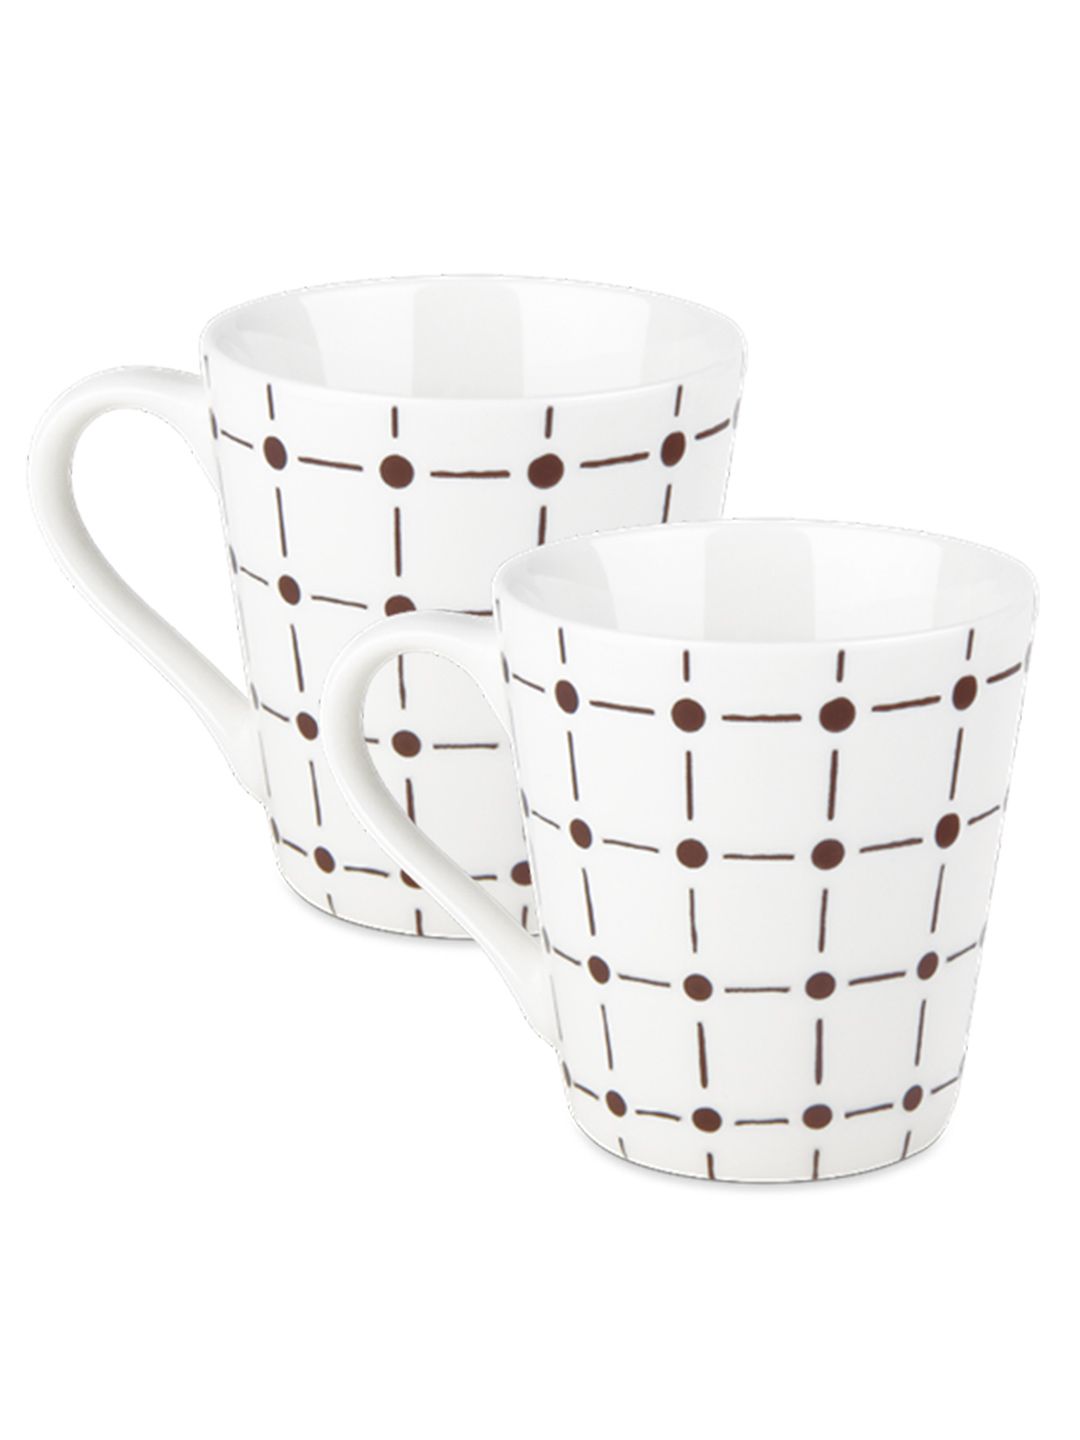 Treo Earthen Art Set Of 2 Brown Dot & Line Ceramic Mug 210 ml Each